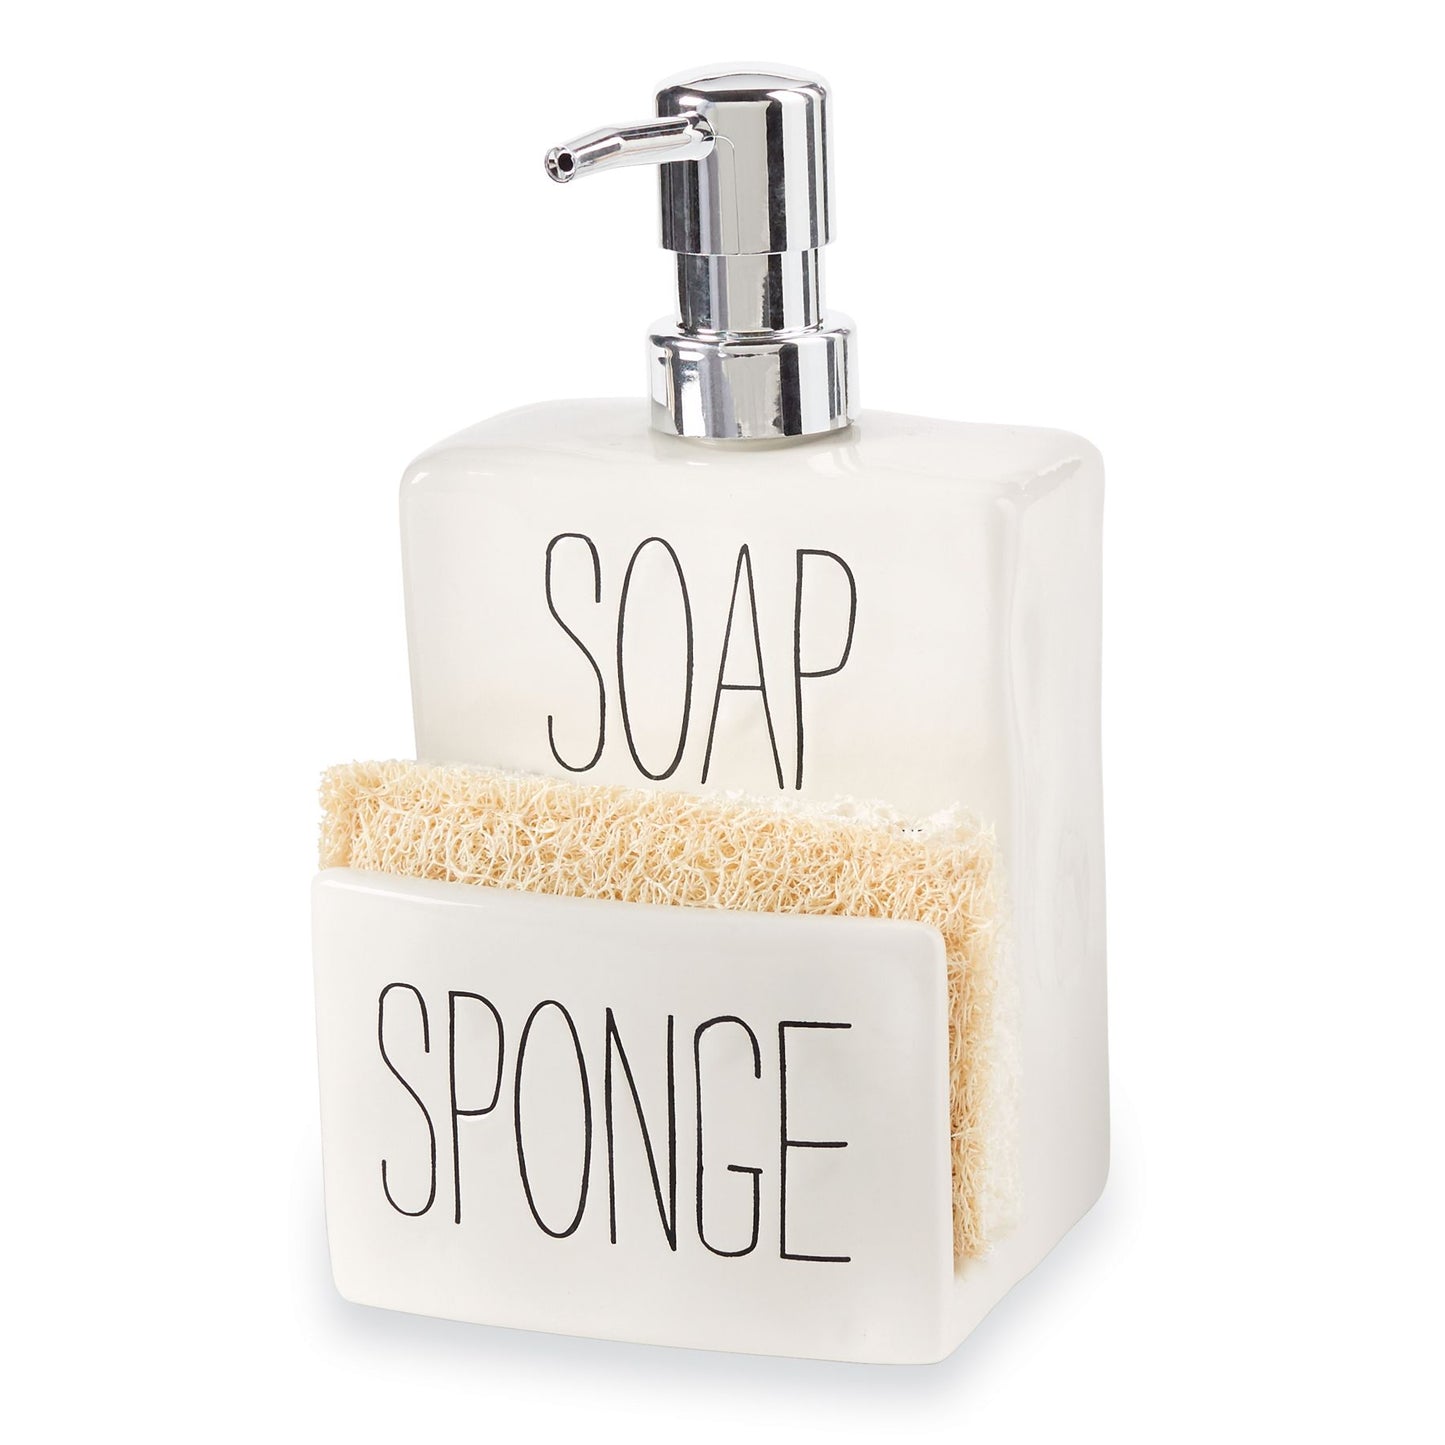 Soap Pump And Sponge Holder